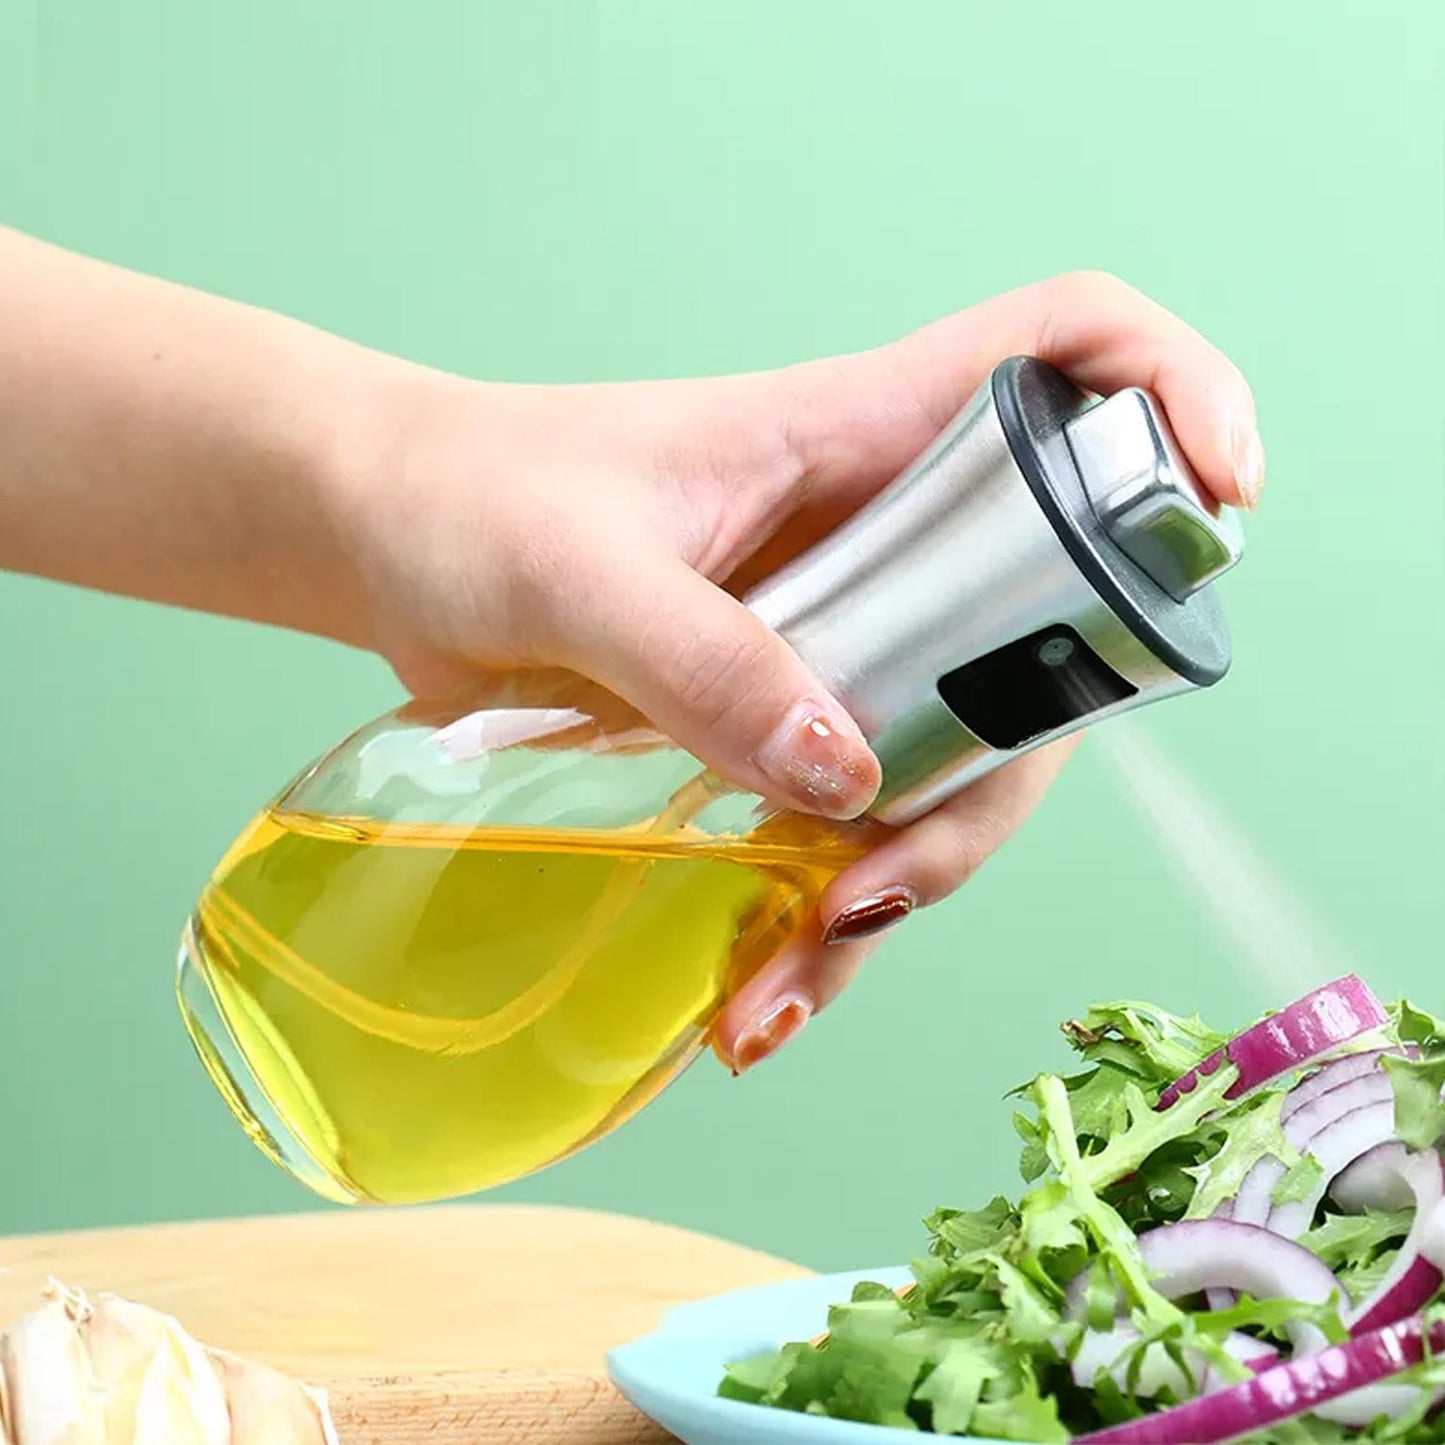 5340 Oil Dispenser Bottle, Oil and Vinegar Cruet, Oil Sprayer Dispenser, Olive Oil Dispenser 200 ml Mist Oil Spray Bottle for Cooking with Plastic